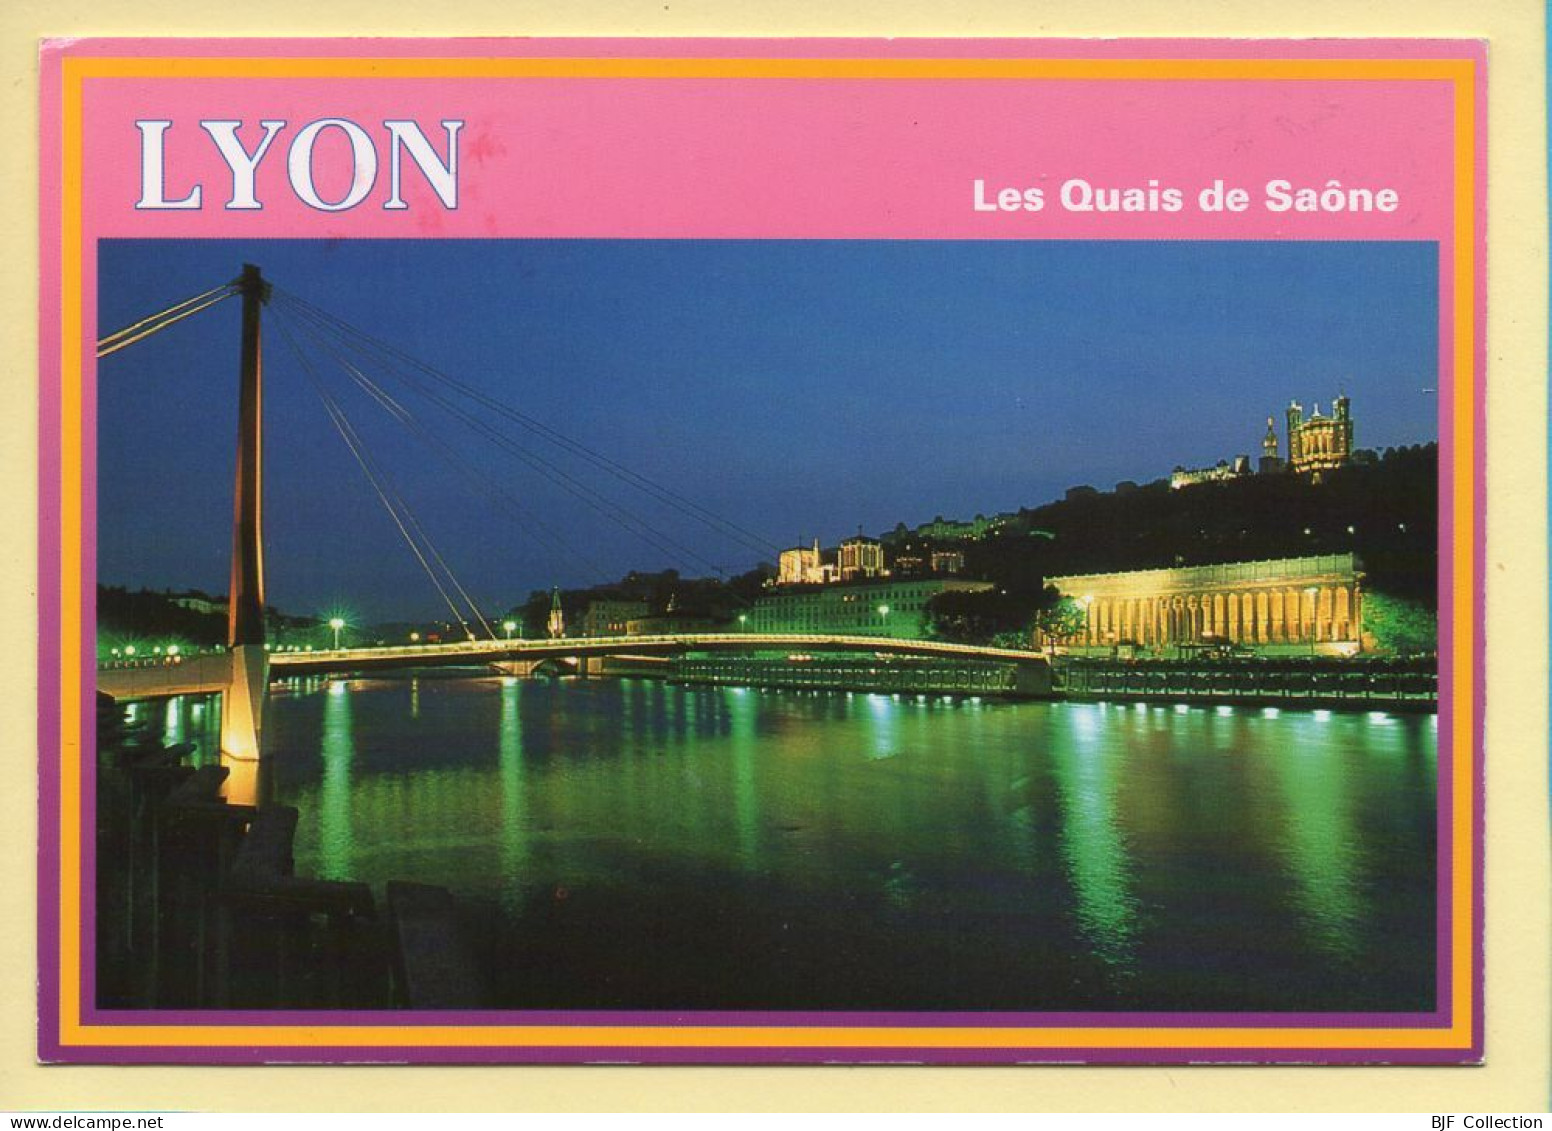 69. LYON (5) Les Quais De Saône / Notre-Dame De Fourvière / Palais De Justice (2 Scans) - Lyon 5